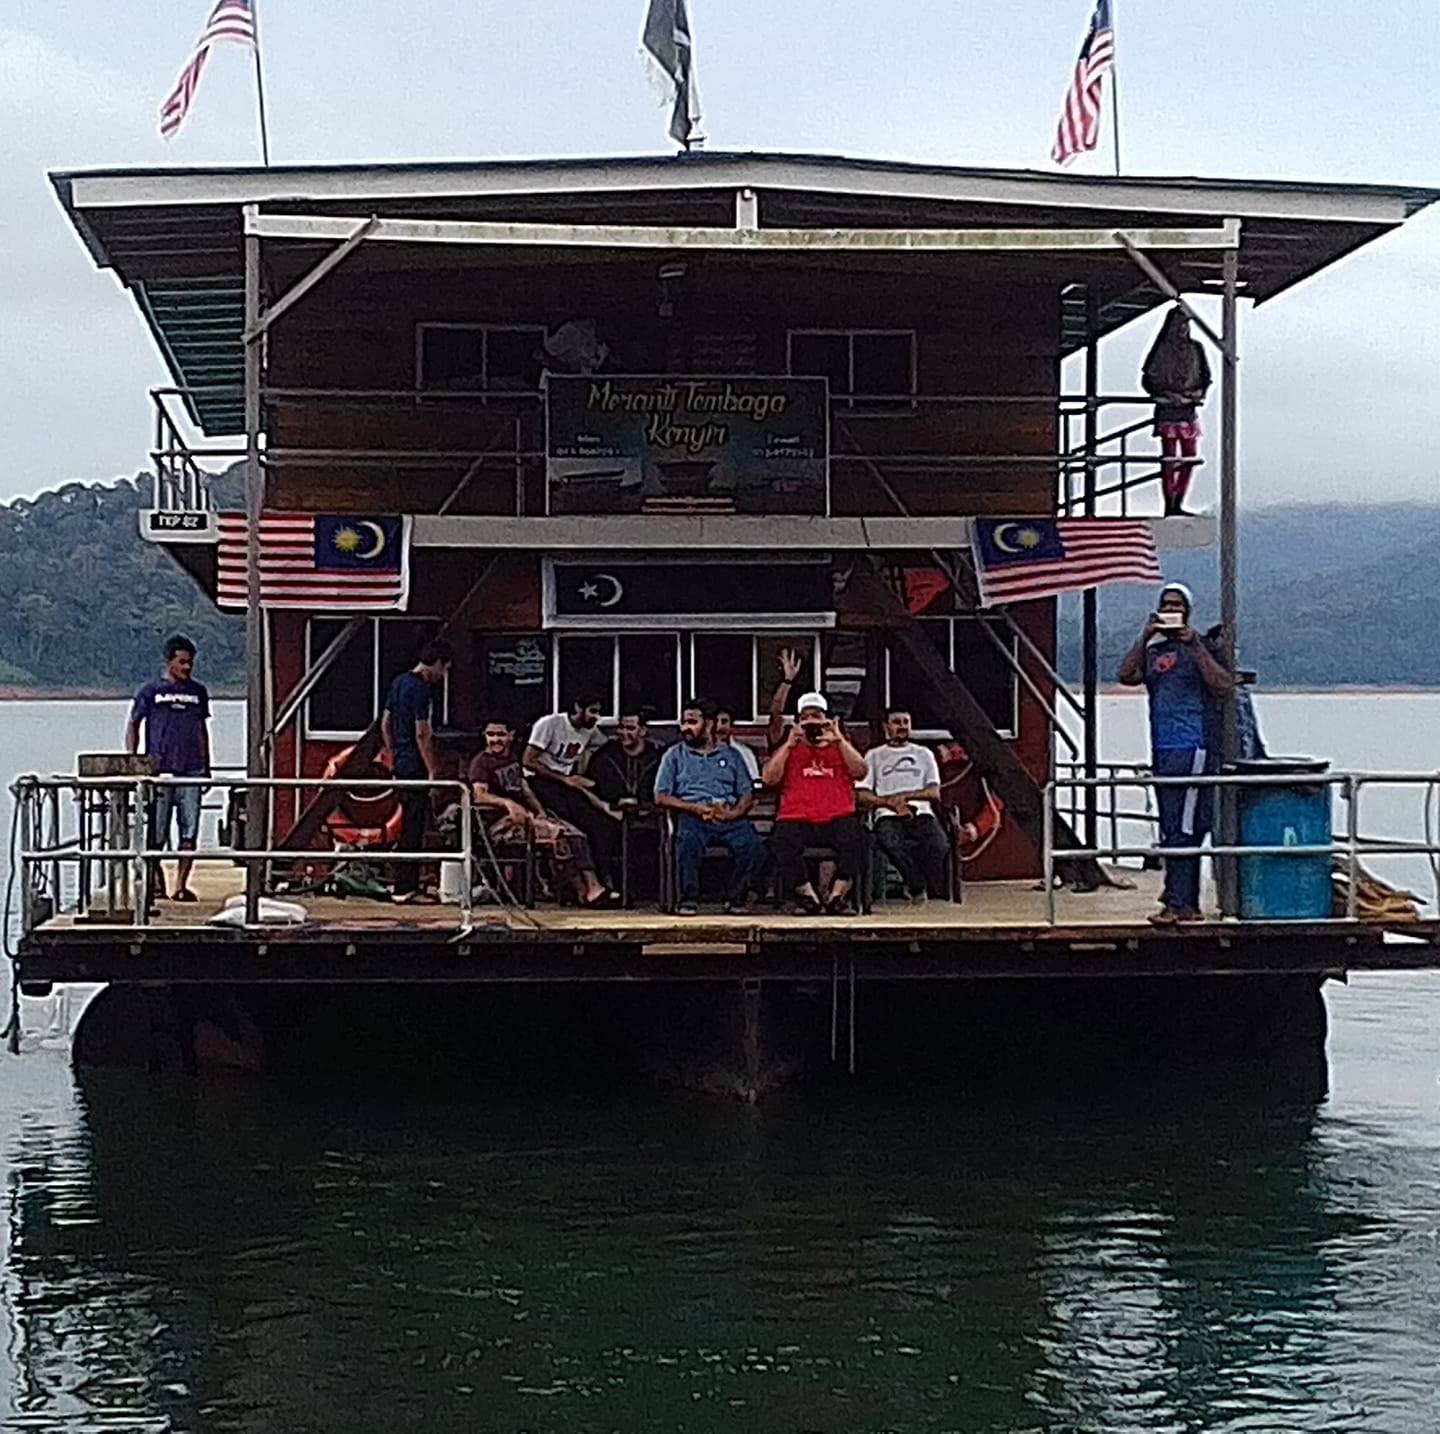 Meranti Tembaga Houseboat